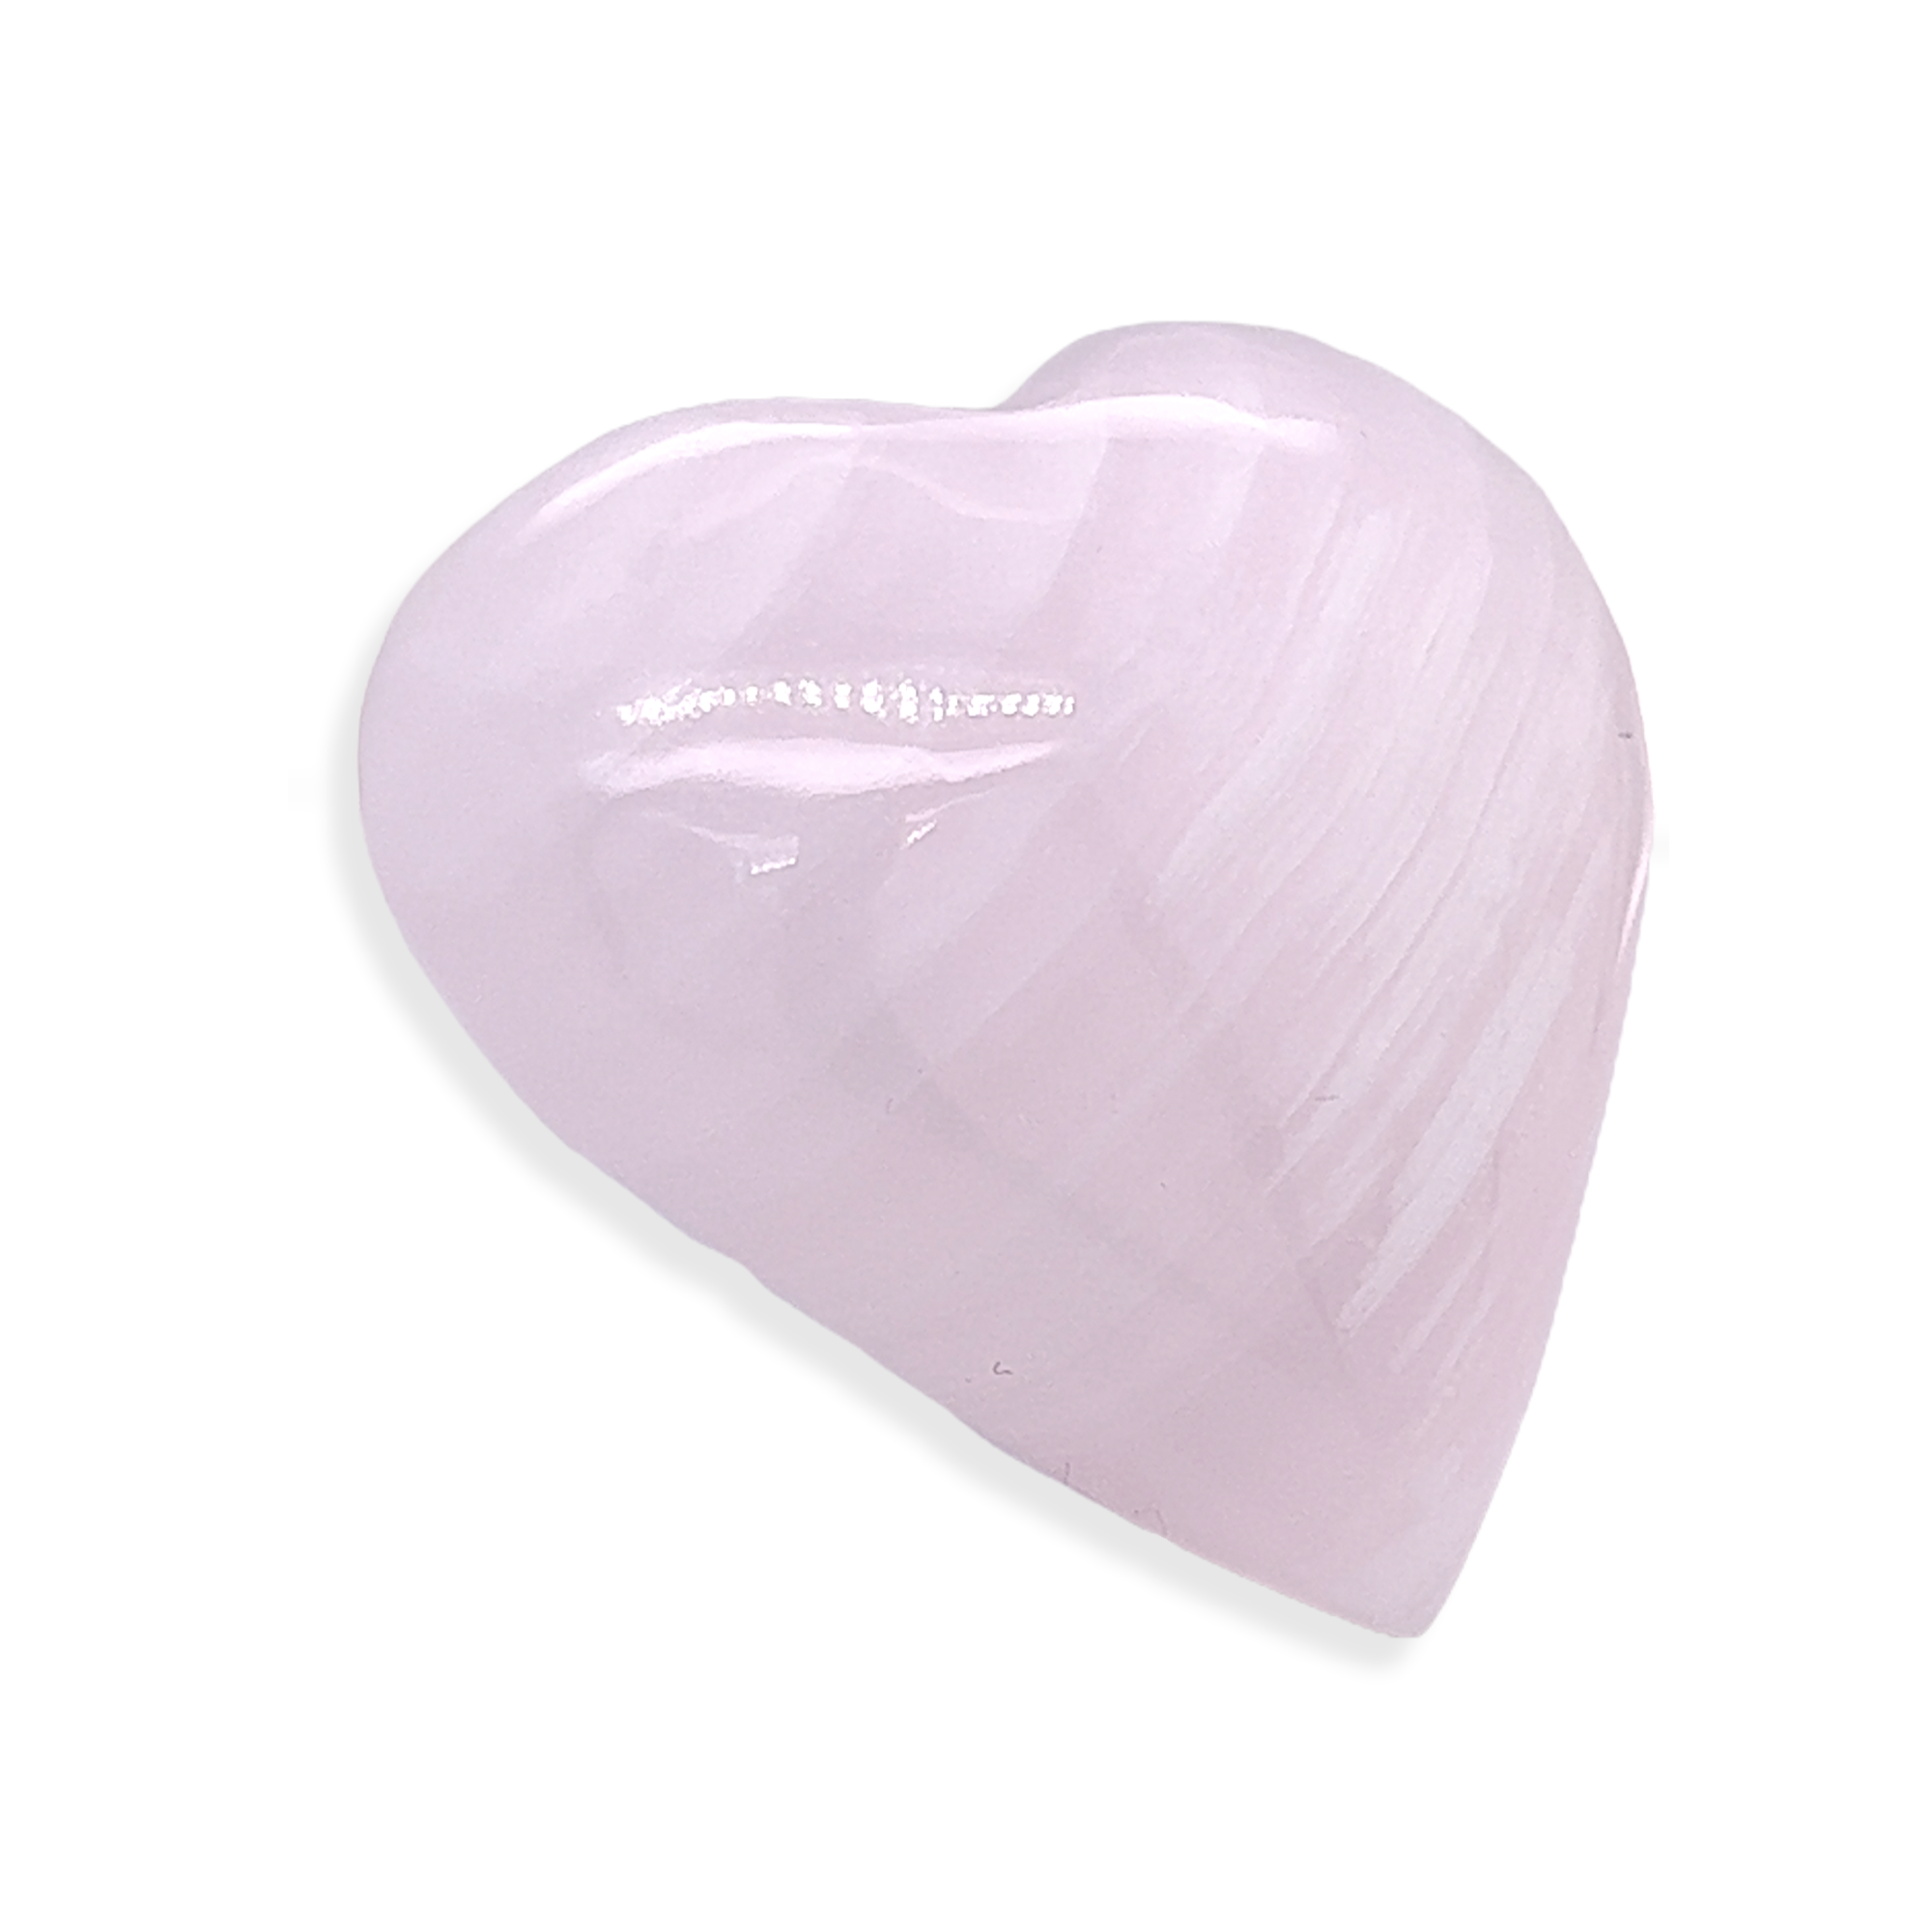 Pink Mangano Calcite Heart k166__2022-06-28-13-27-33